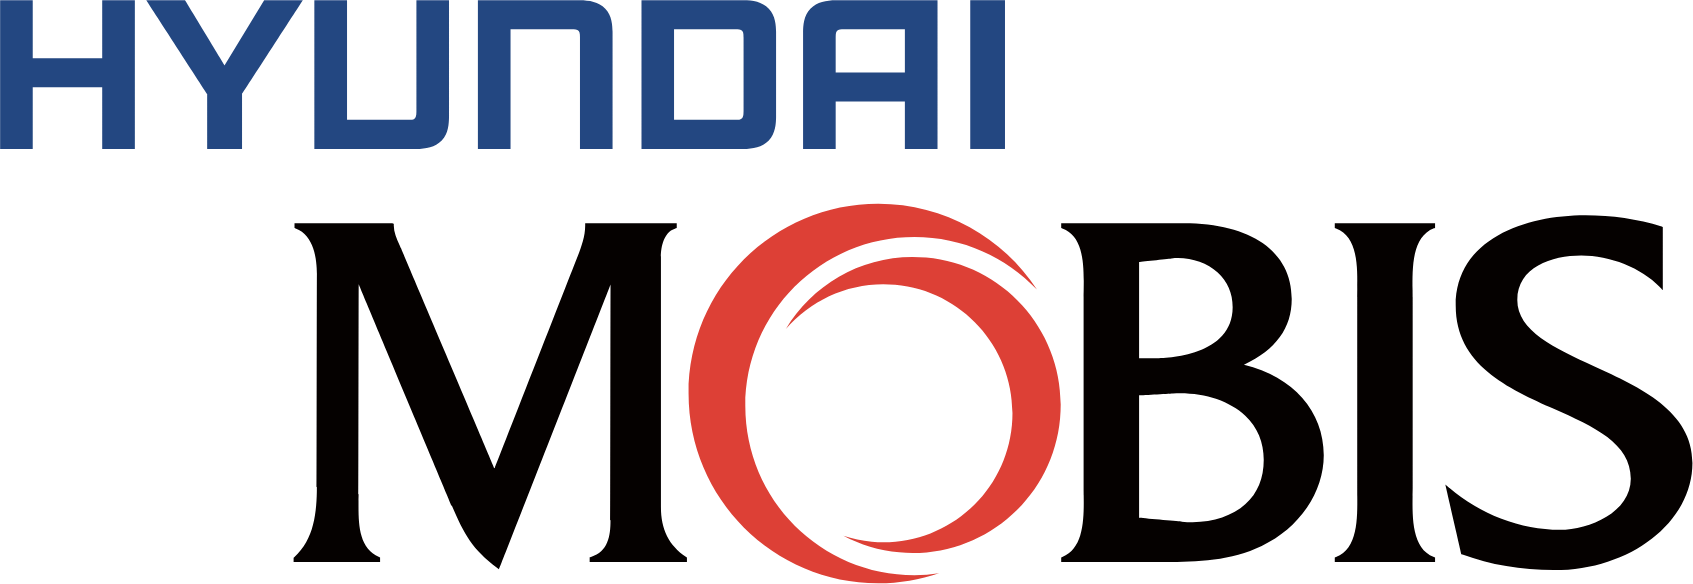 Hyundai Mobis
 logo large (transparent PNG)